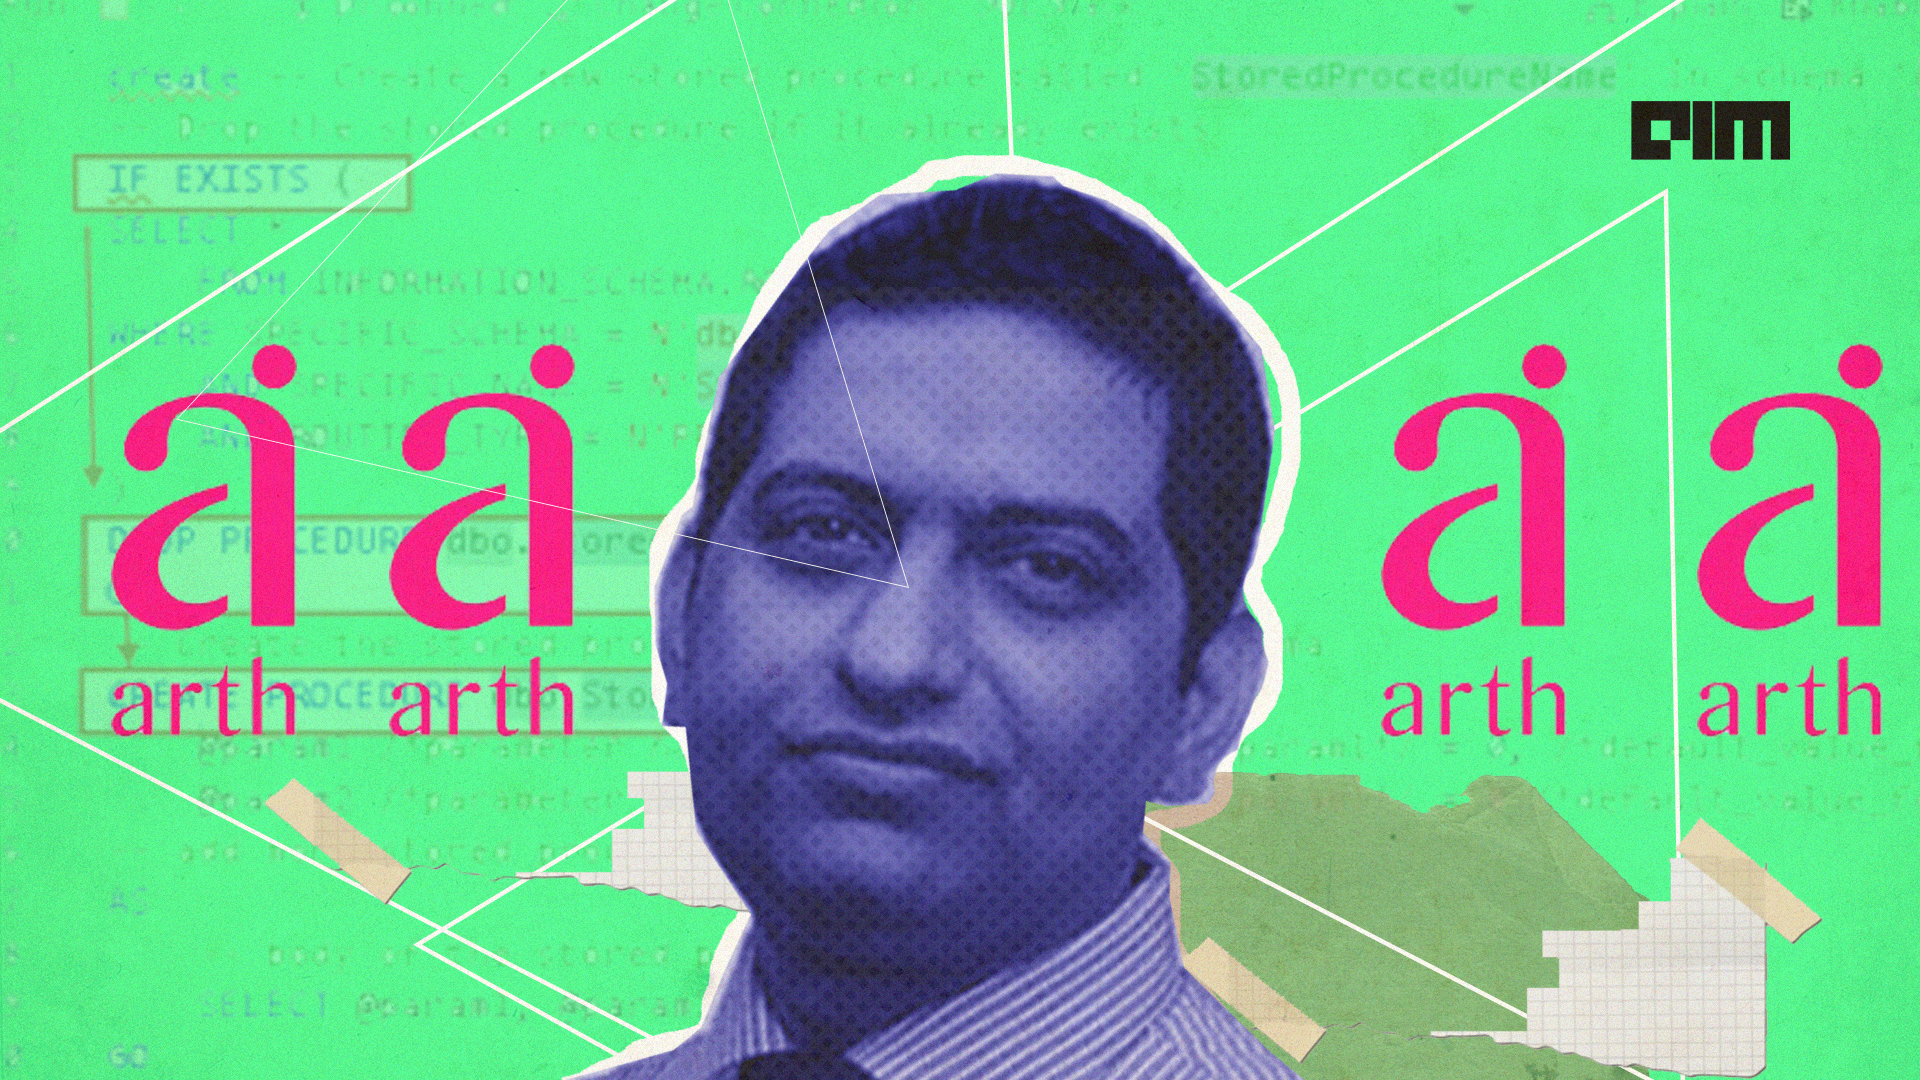 ARTH, fintech startup